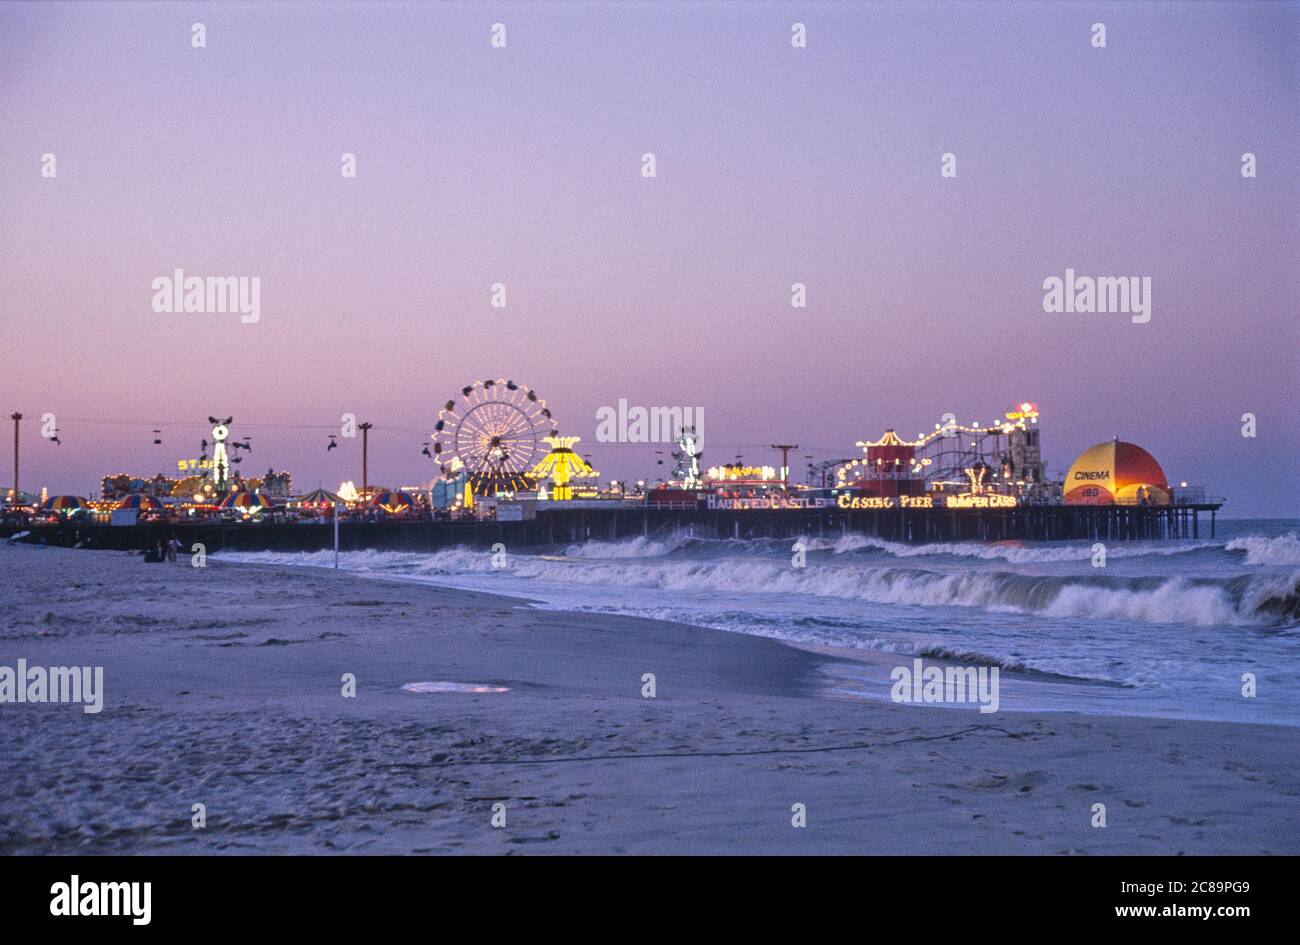 Casino Pier at boardwalk, Seaside Heights, New Jersey